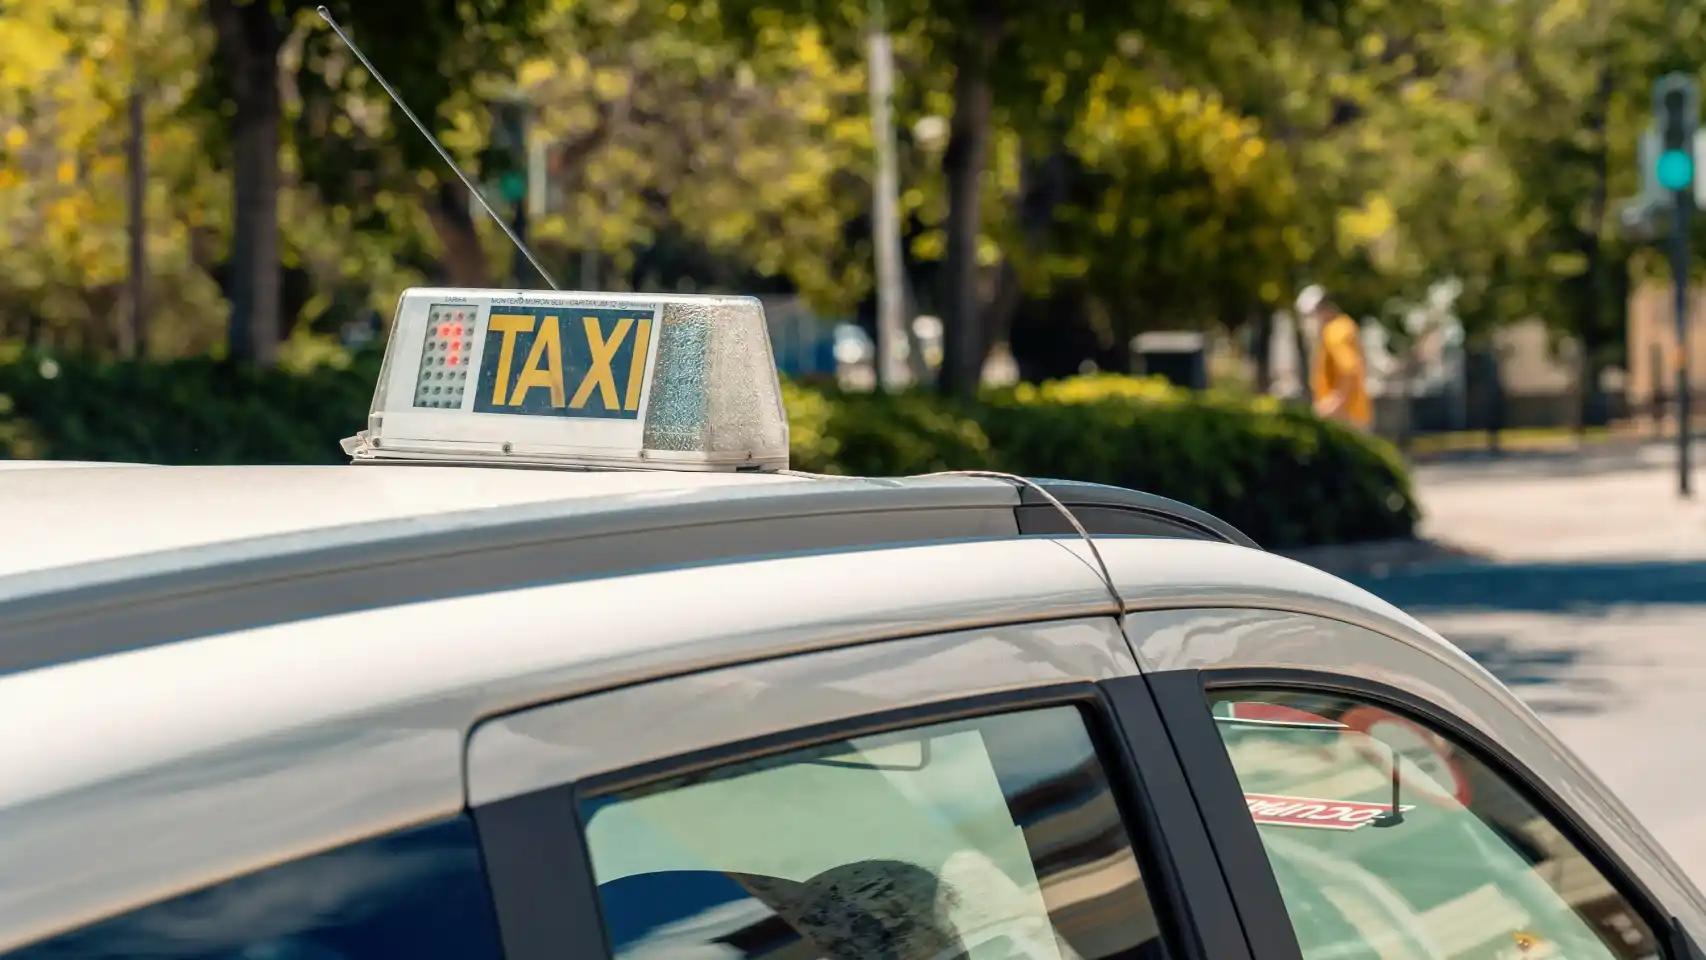 alegaciones taxi ilegal - Dónde se puede denunciar a un taxista